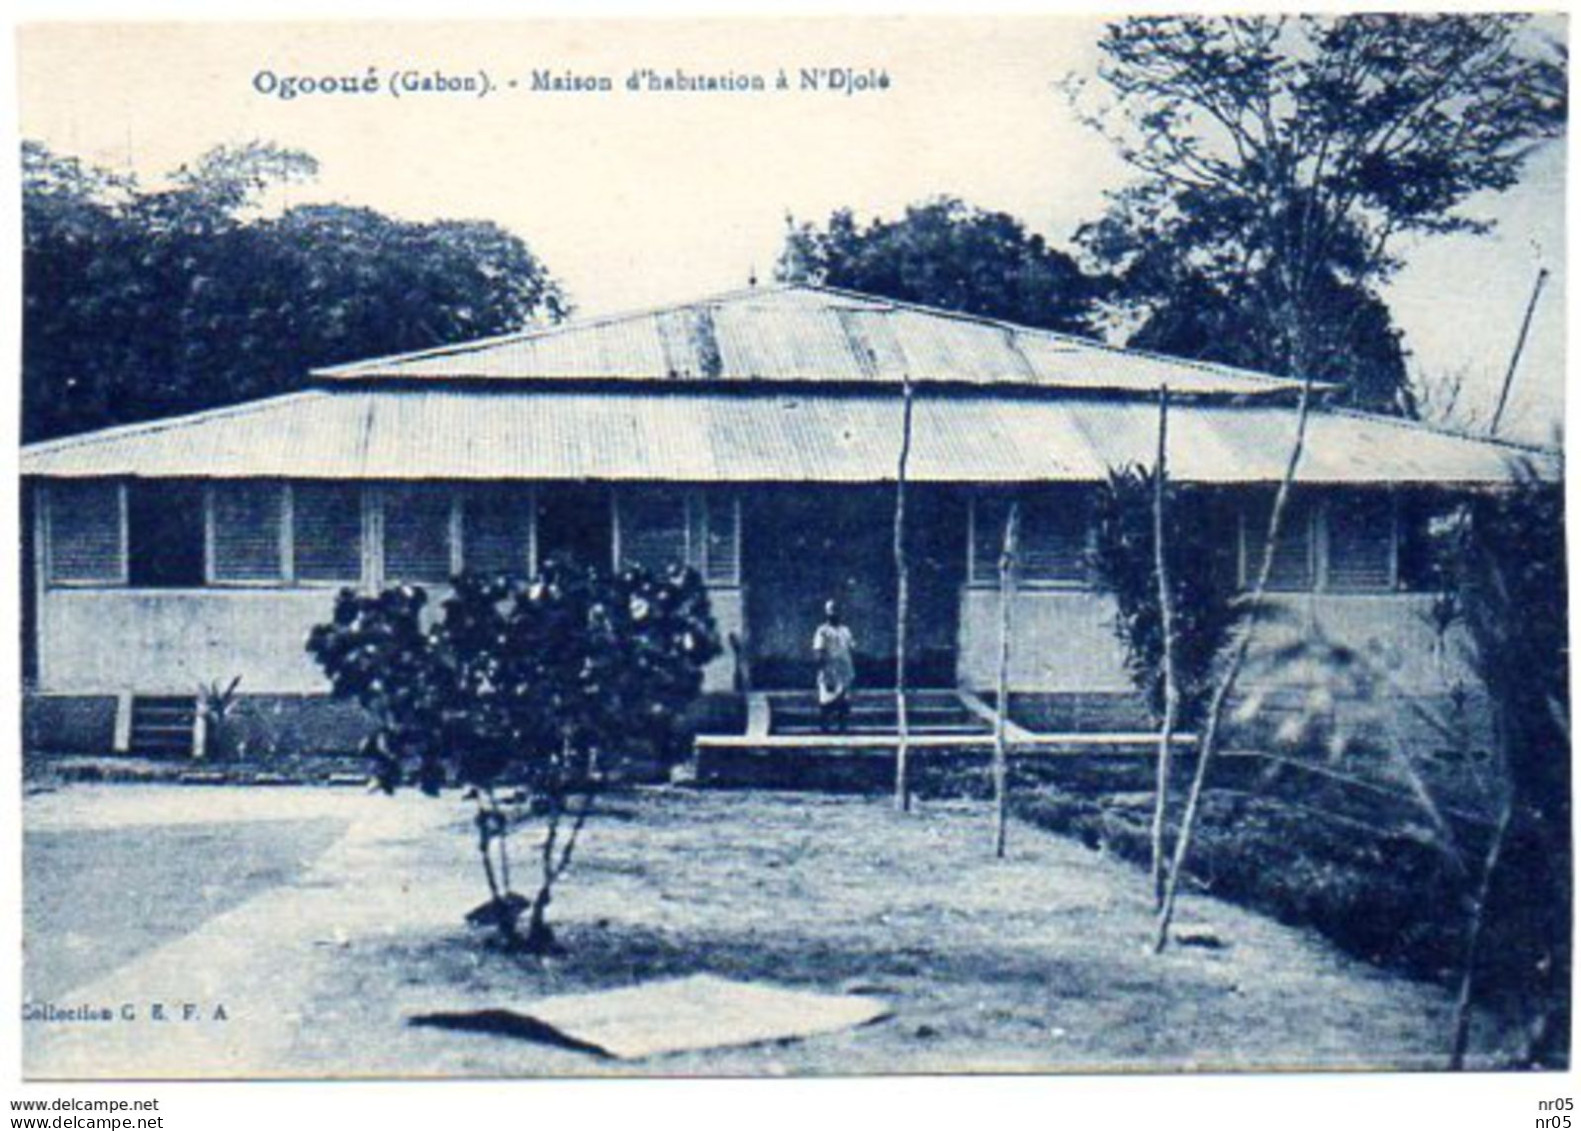 OGOOUE - Maison D'Habitation à N'Djolé - GABON ( Afrique ) - - Gabon